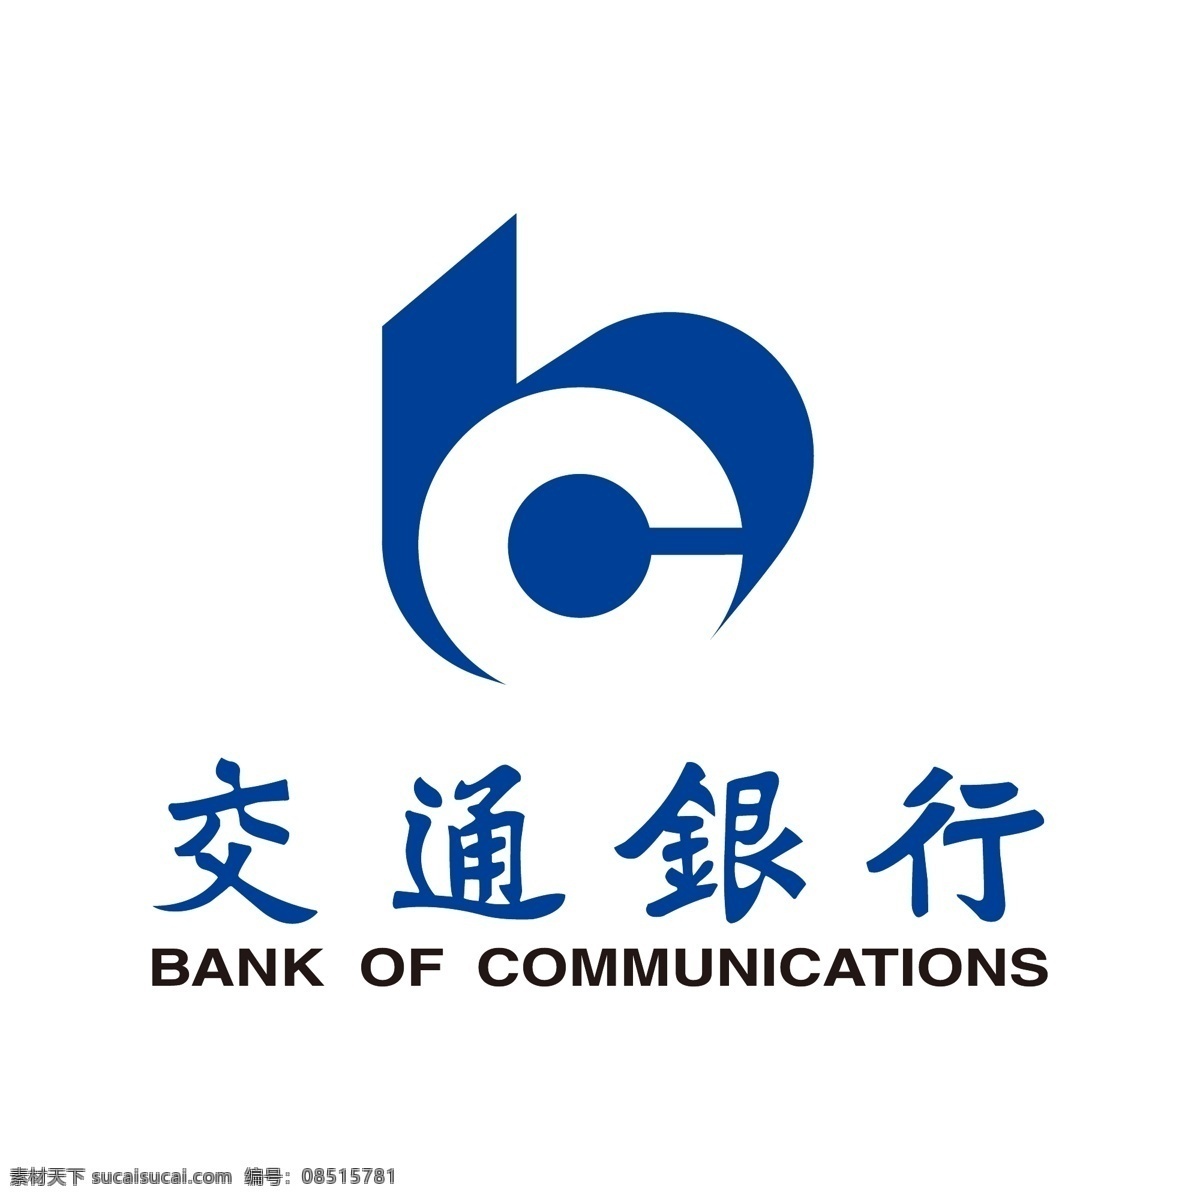 交通银行标志 交通银行 logo 银行标志 银行logo